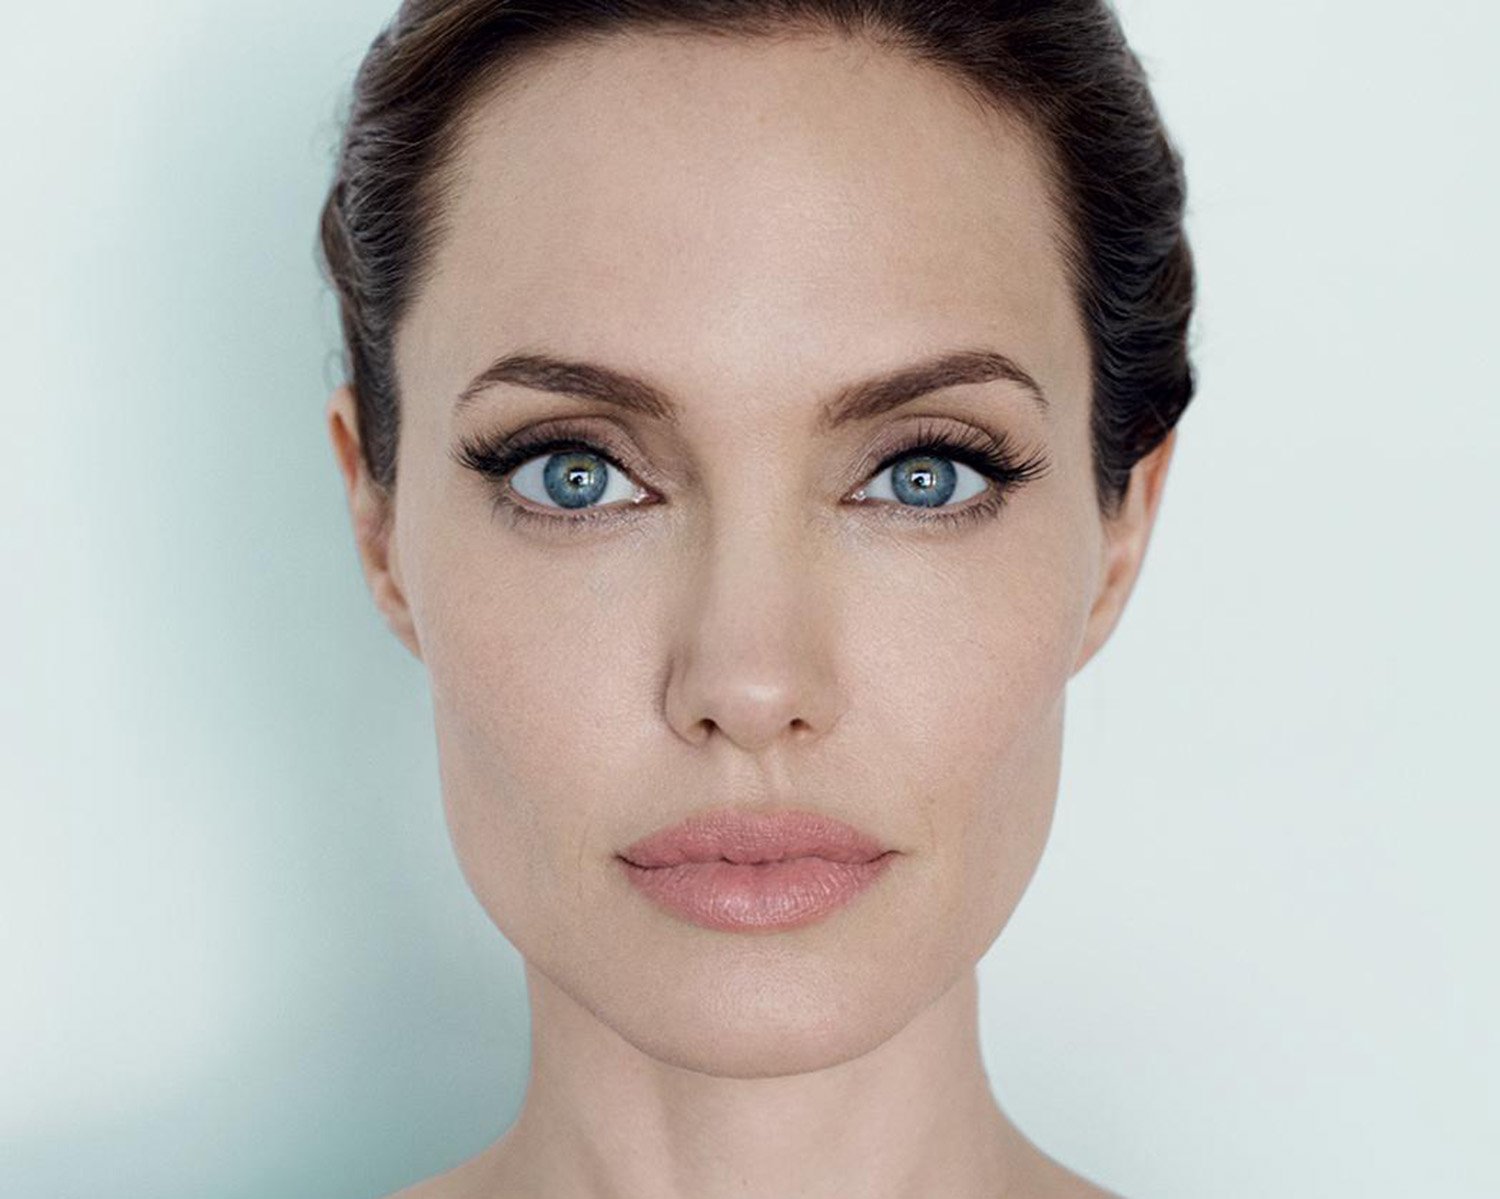 Породистое лицо. Анджелина Джоли анфас. Анджелина Джоли фото анфас. Анджелина Джоли анфас лица. Анджелина Джоли анфас и профиль.